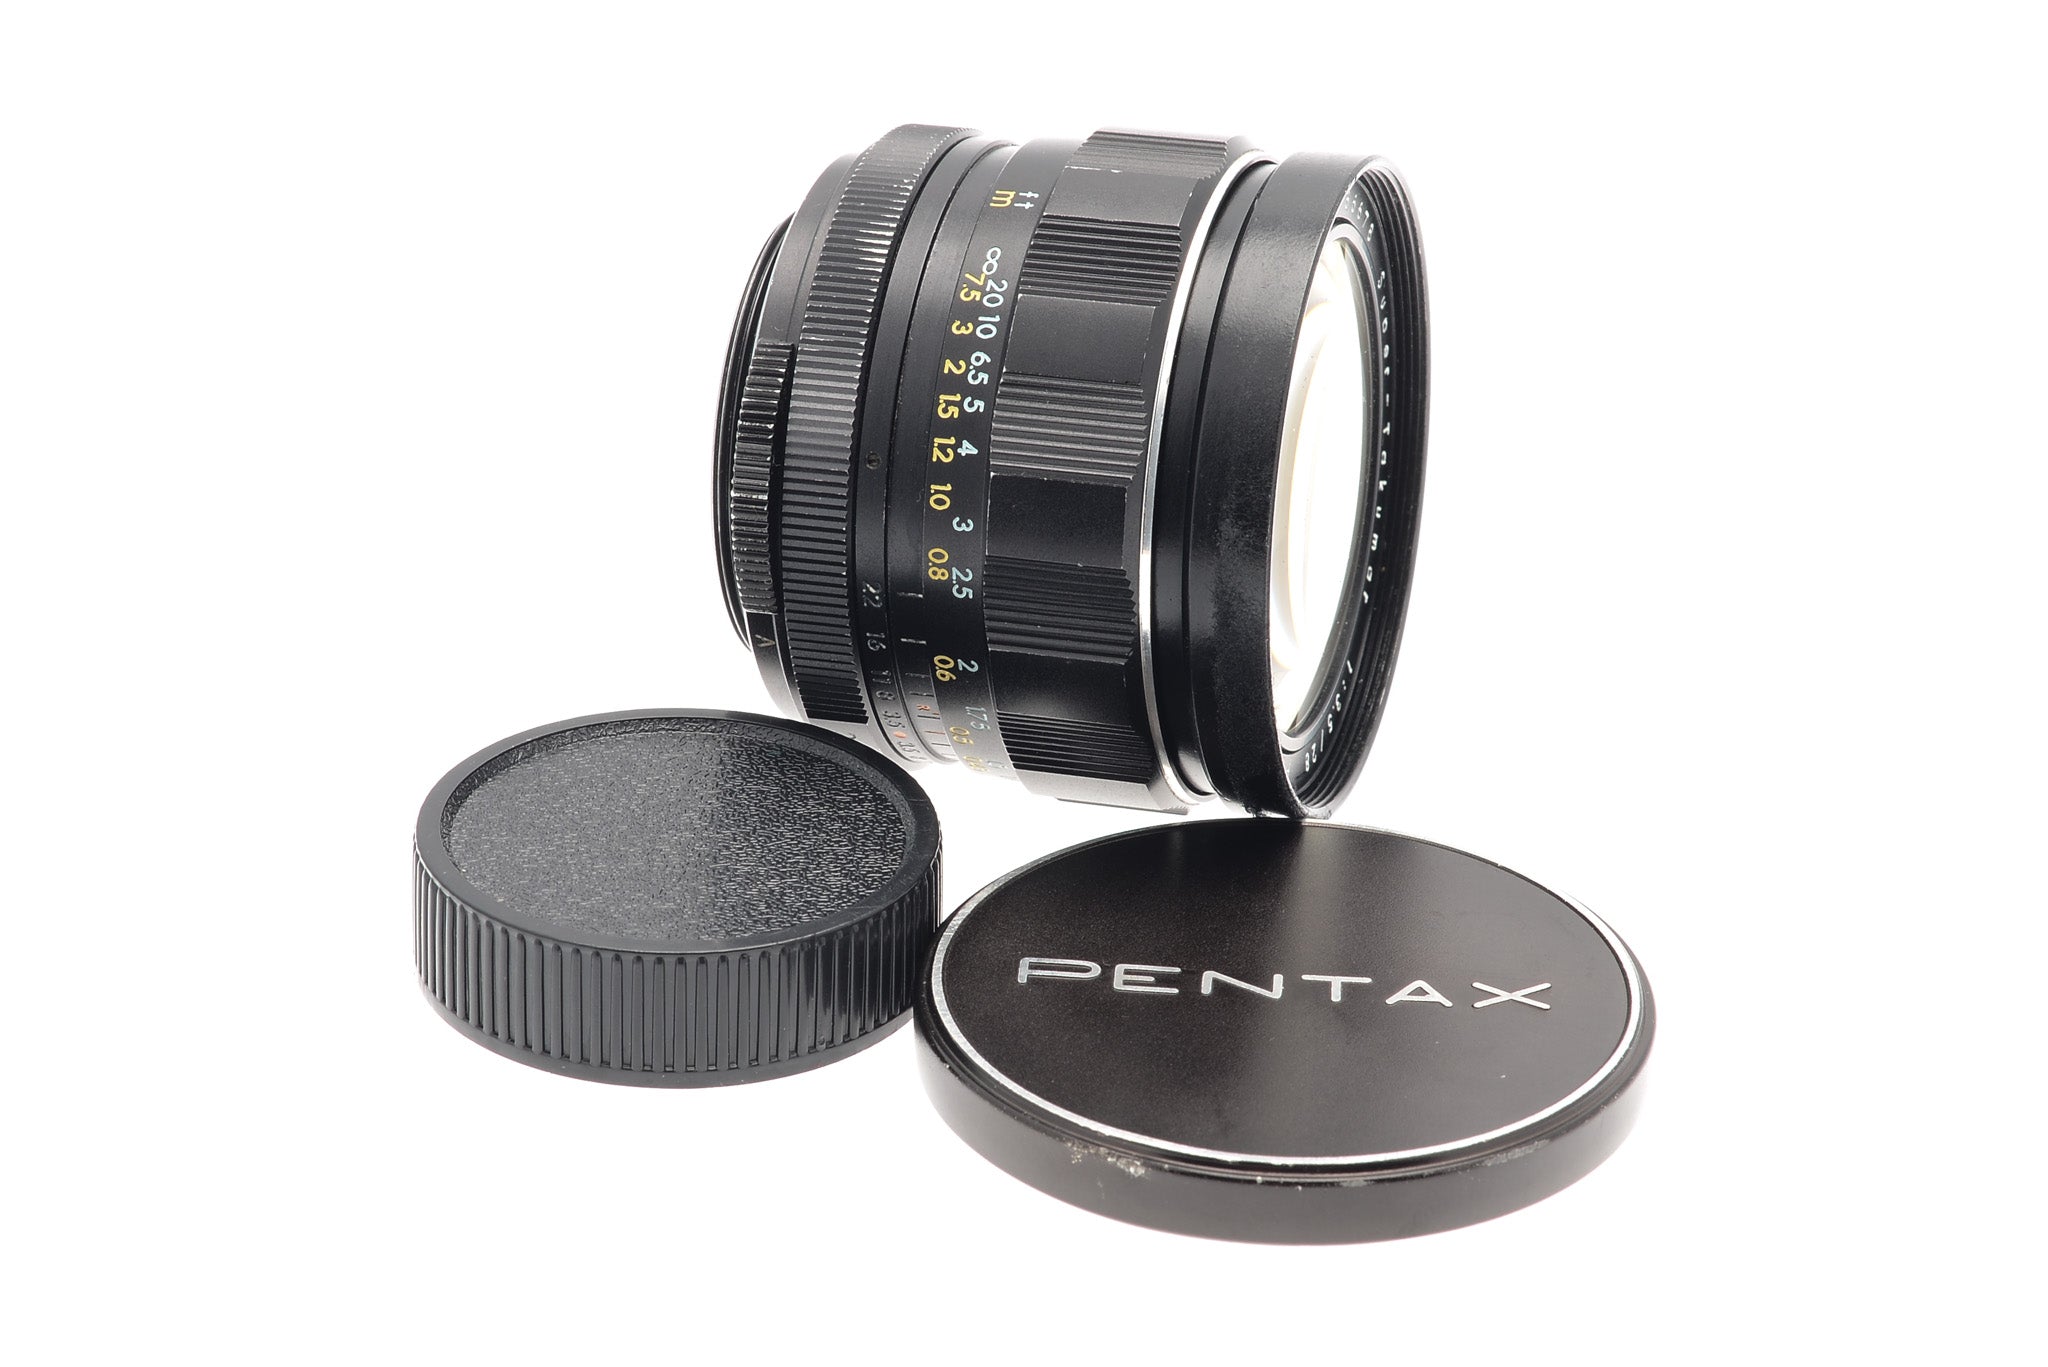 Pentax 28mm f3.5 Super-Takumar